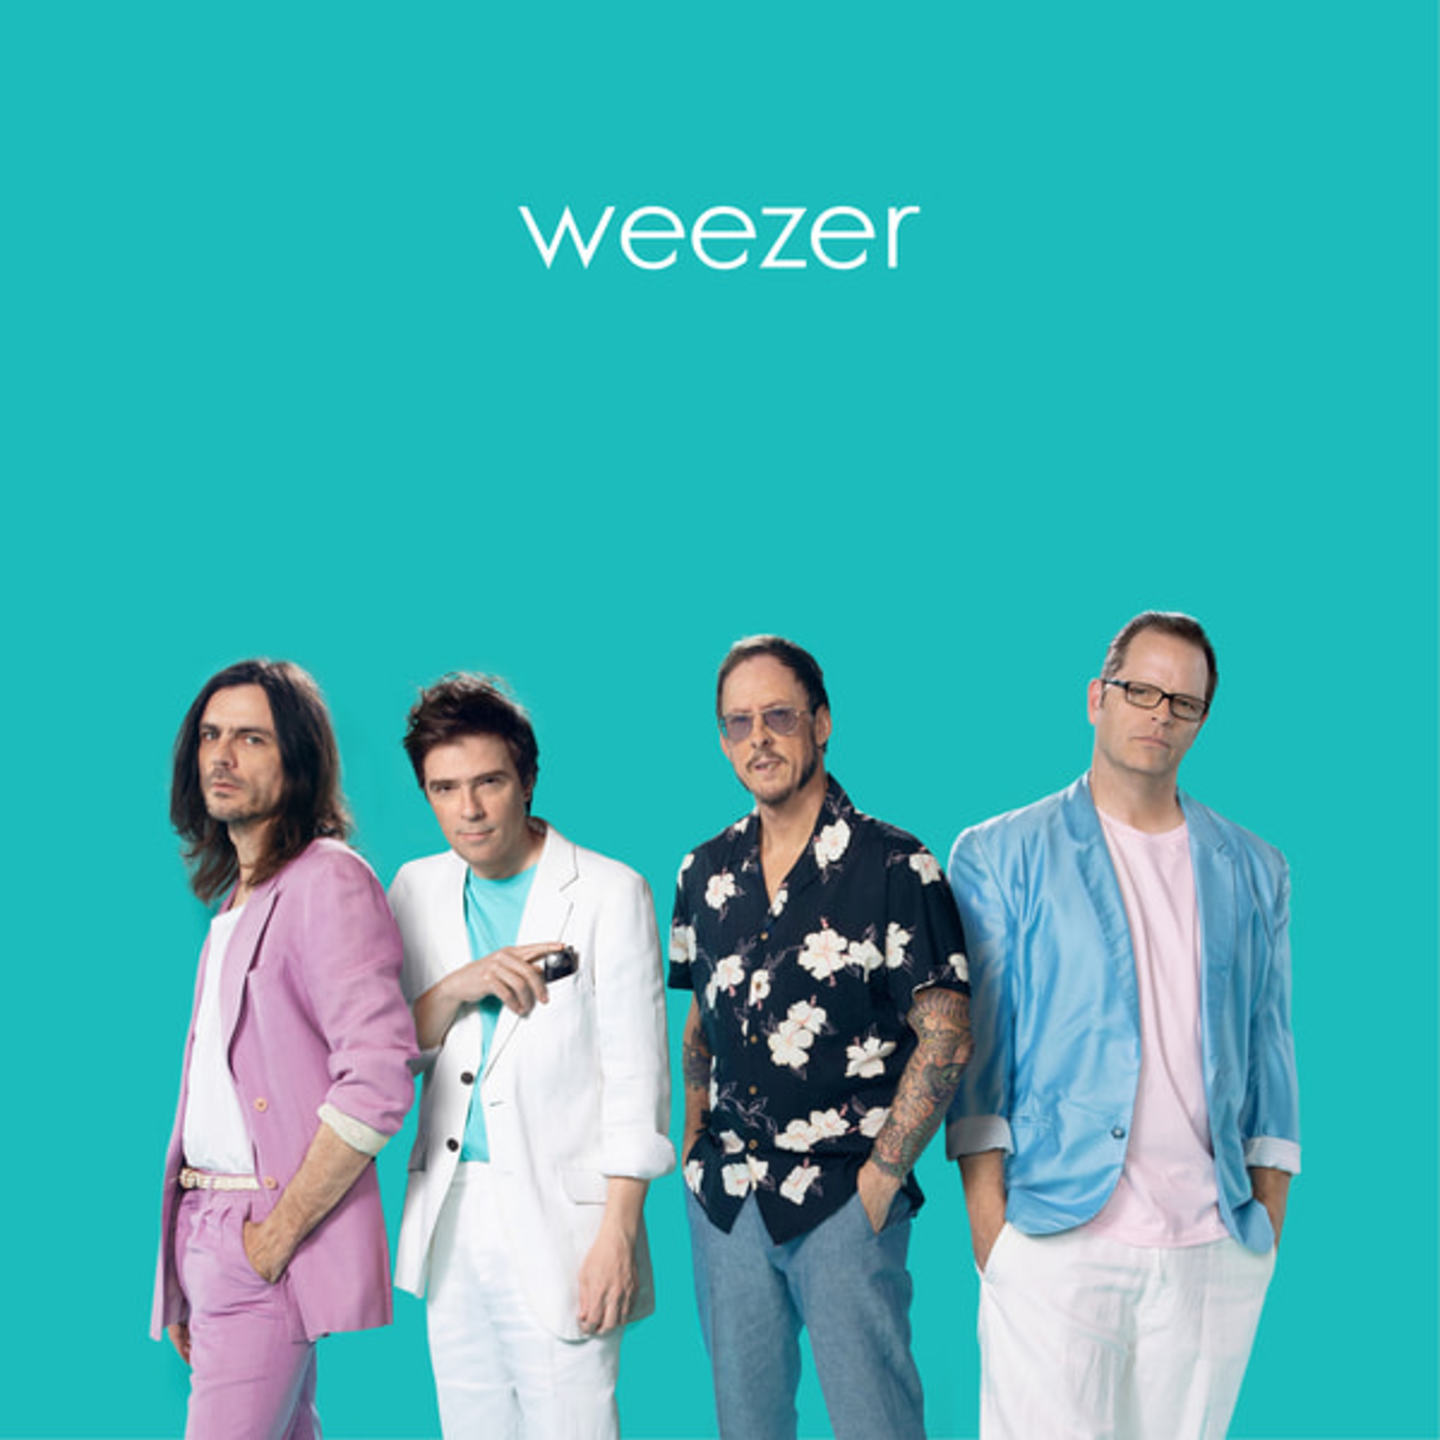 WEEZER - Weezer (Teal Album) LP